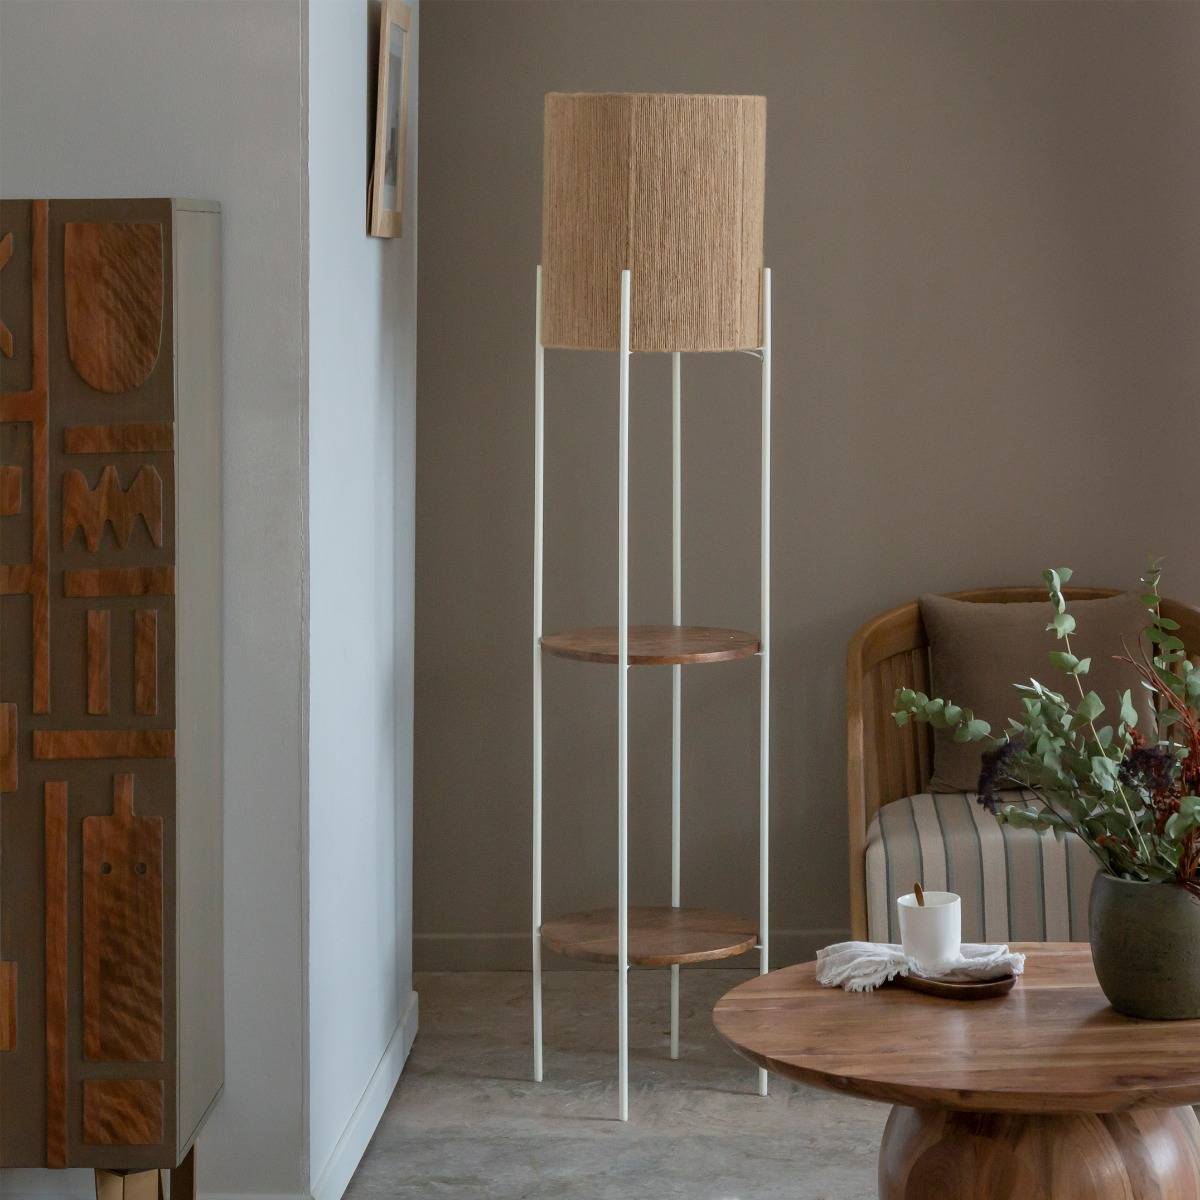 Lampe de table moderne, petite lampe de chevet avec bois et métal